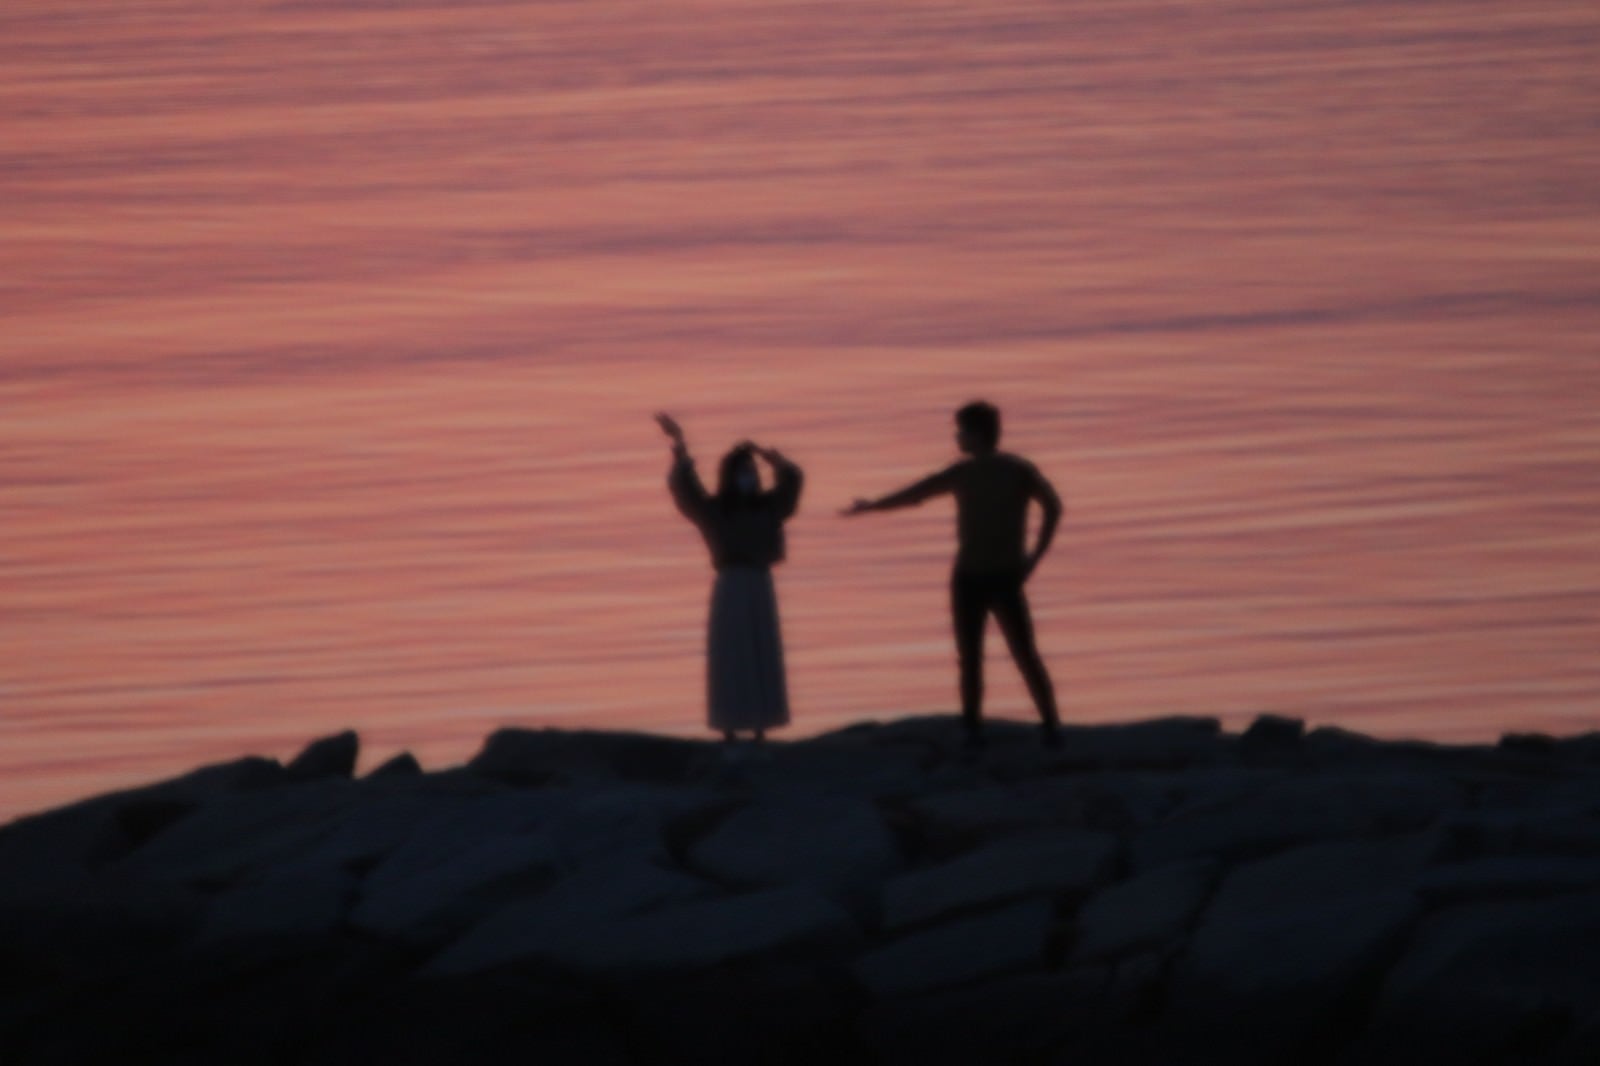 「海岸ではしゃぐ恋人達のシルエット」の写真